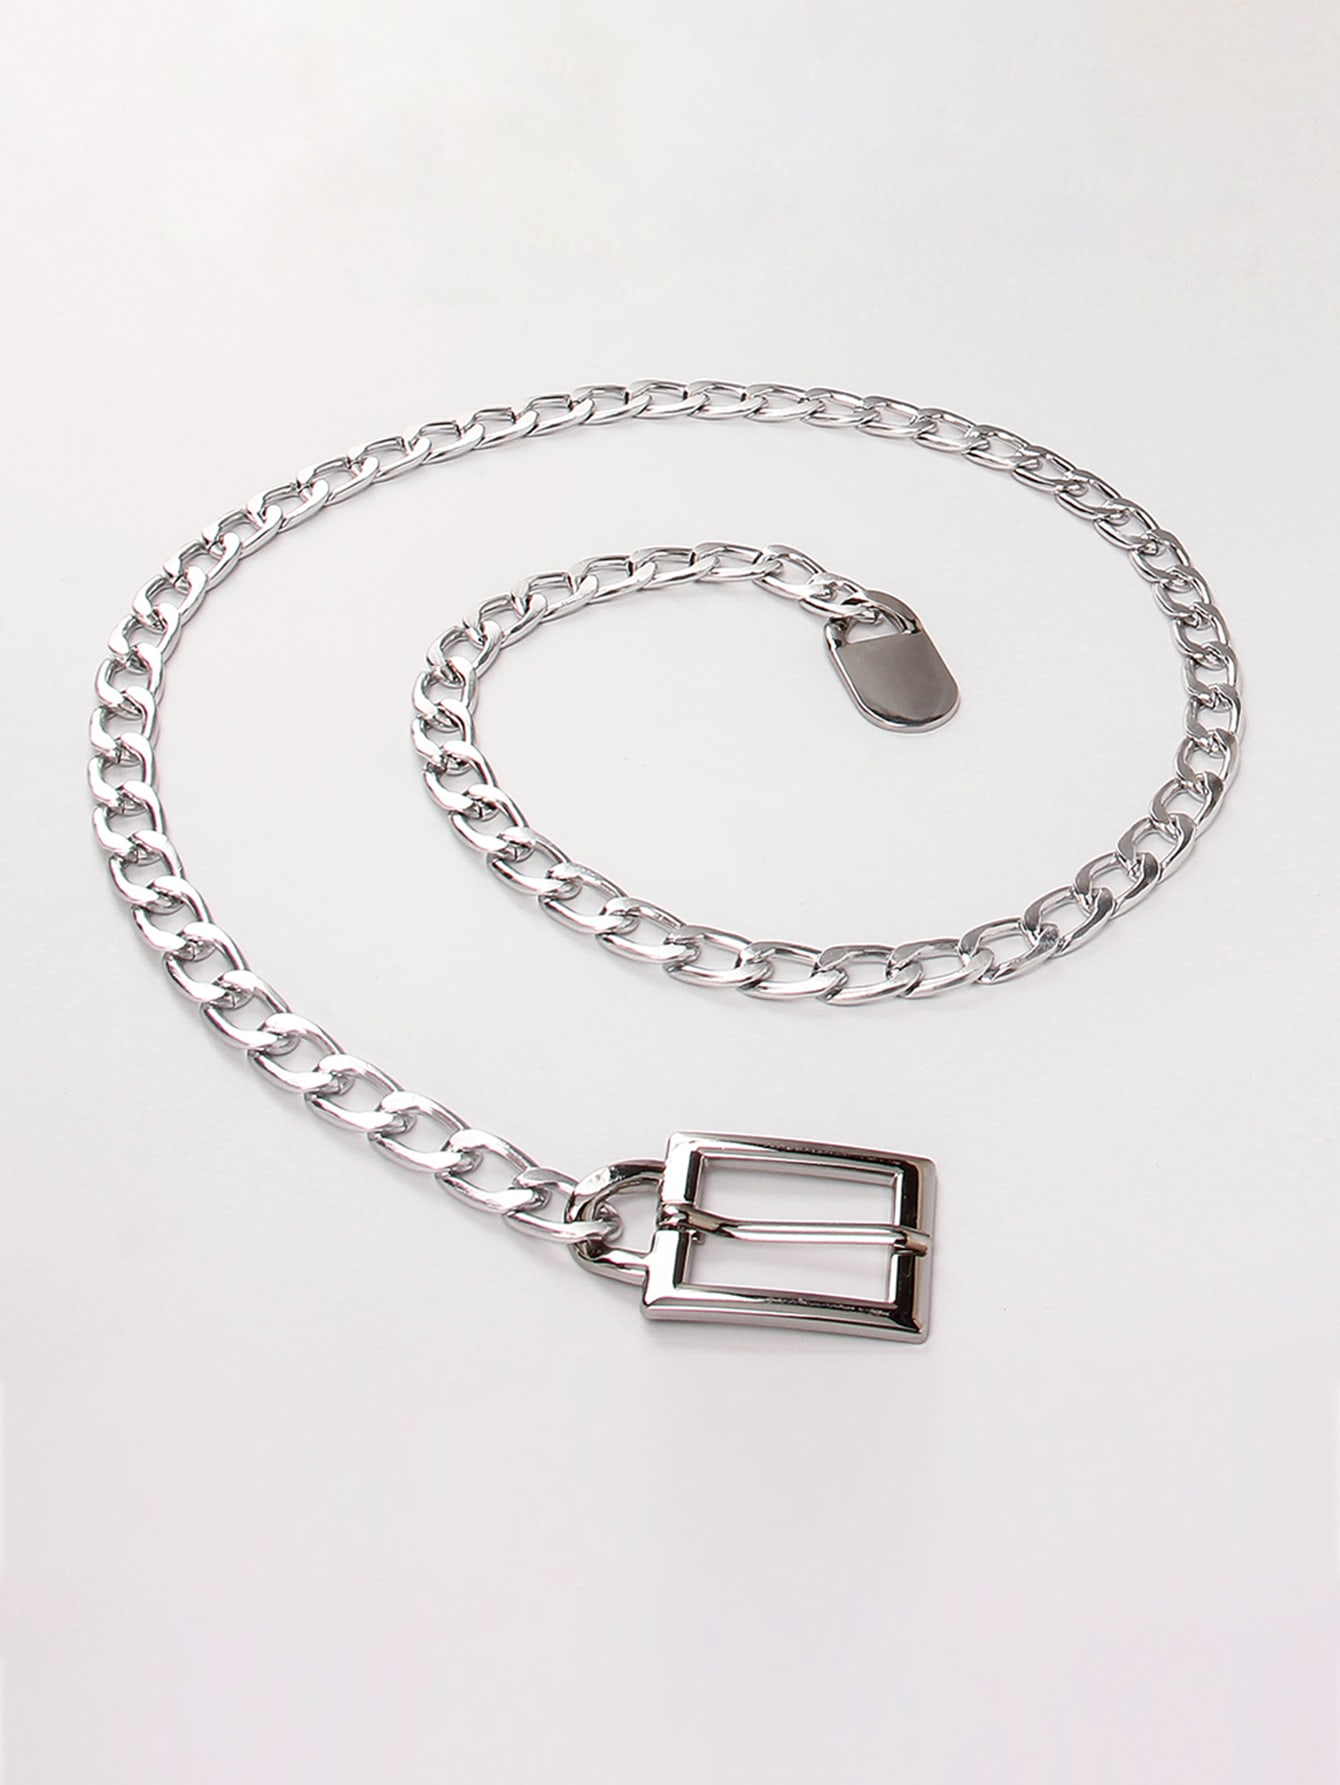 Женский ремень-цепочка с квадратной пряжкой размера 135 см, серебро